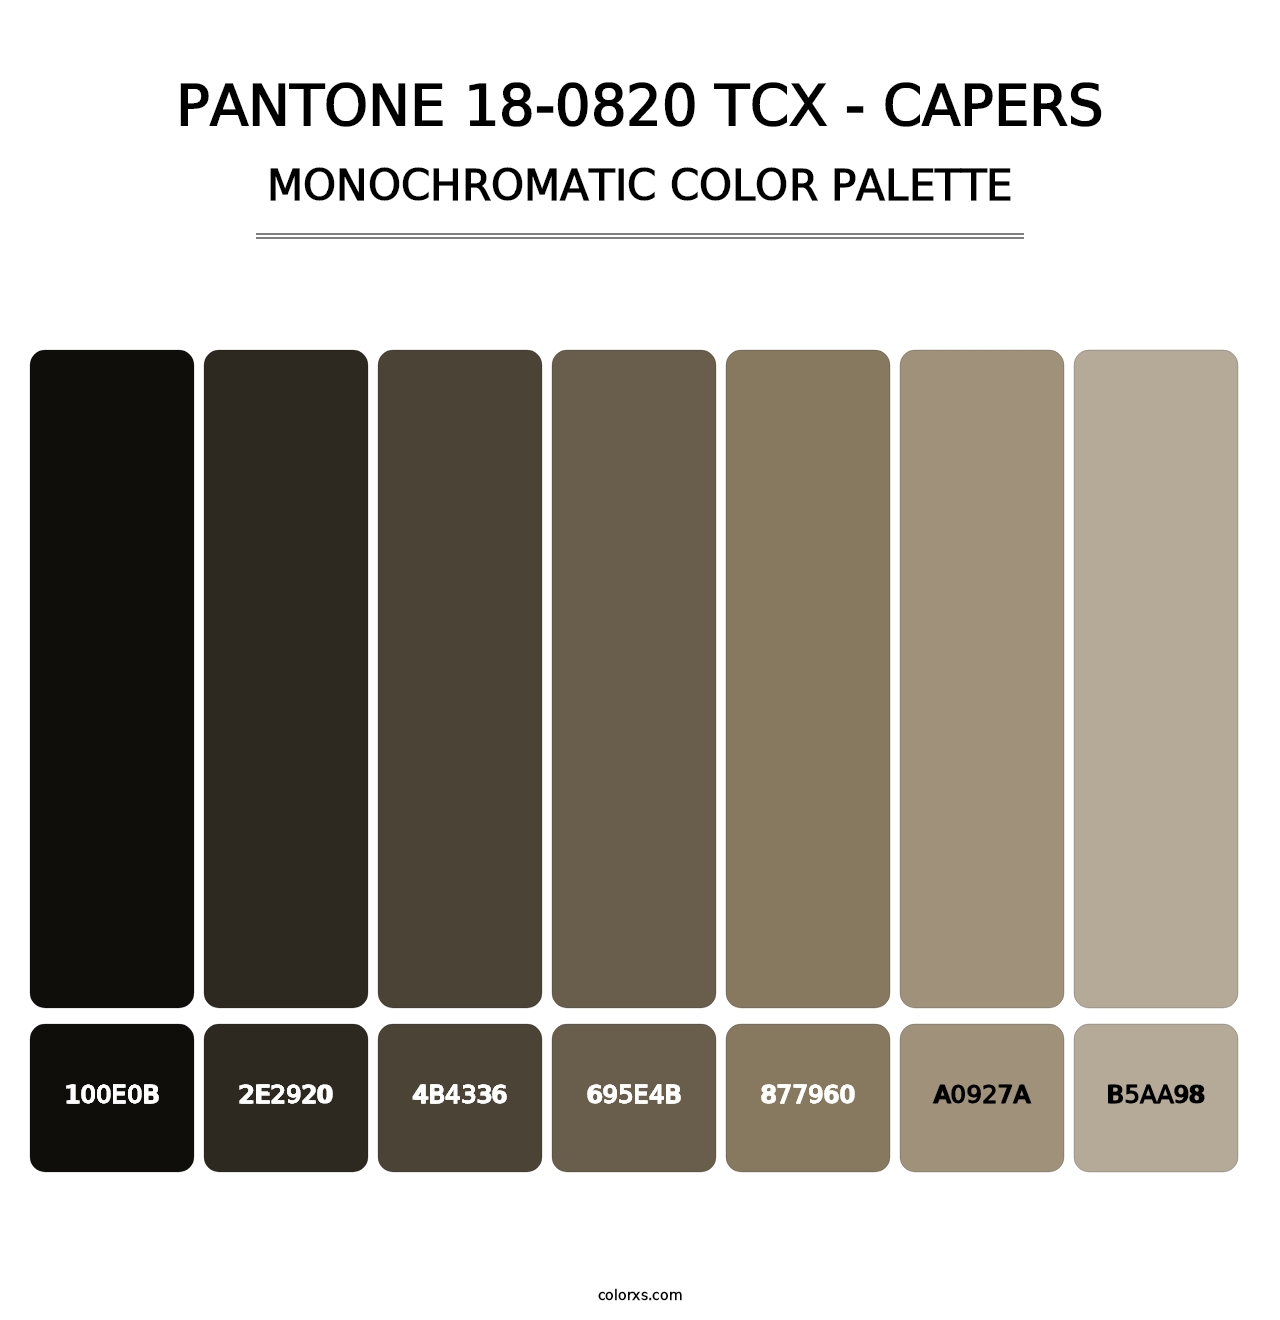 PANTONE 18-0820 TCX - Capers - Monochromatic Color Palette